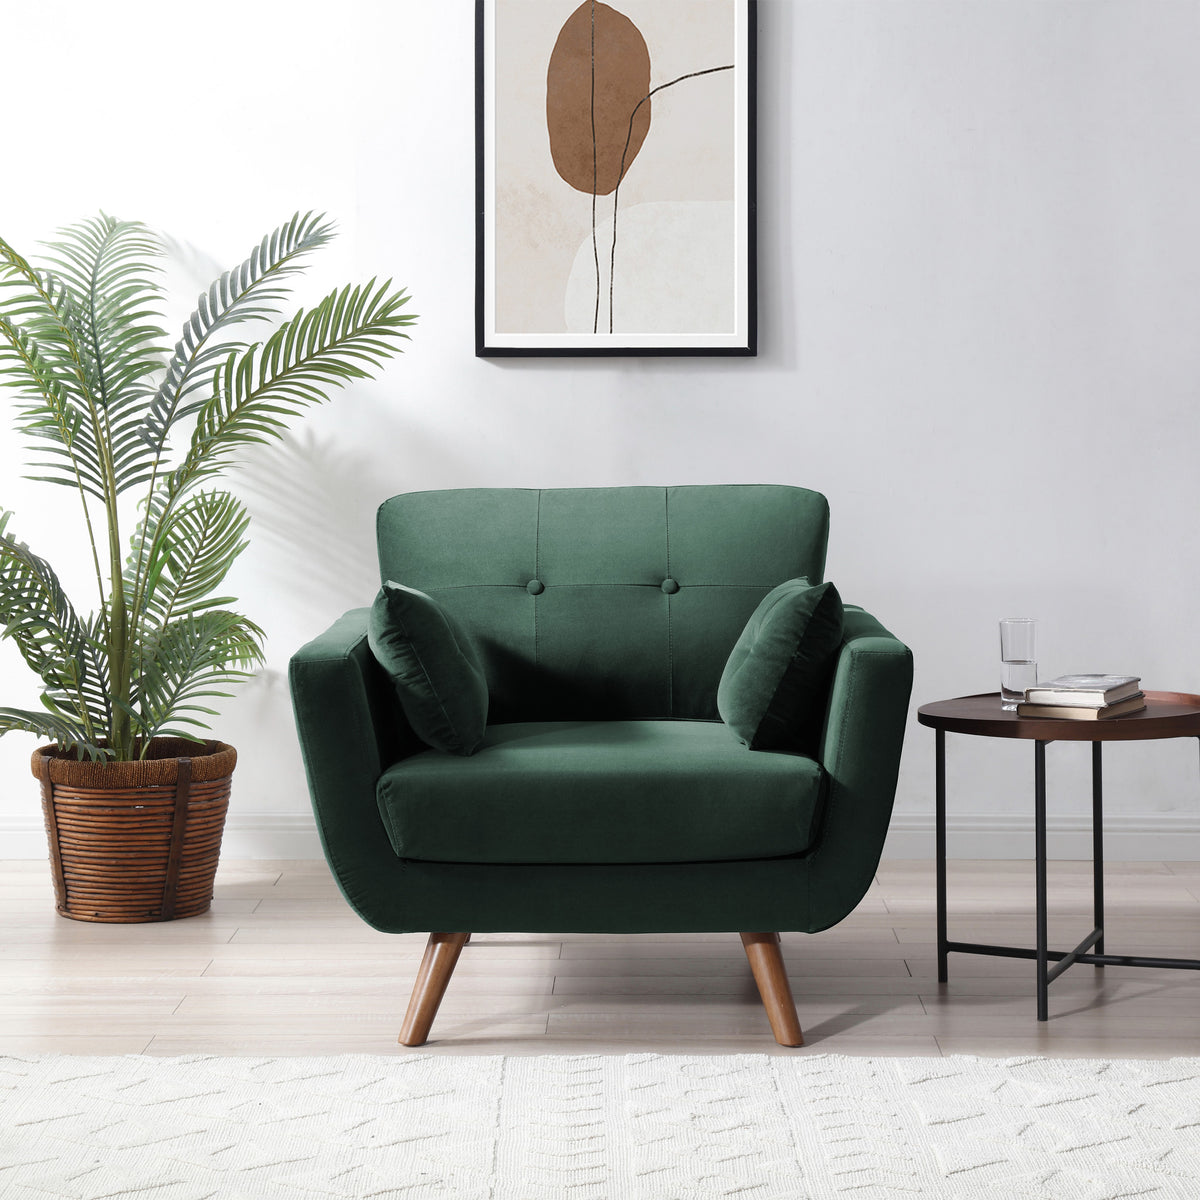 Trom Green Velvet Armchair by Roseland Furniture